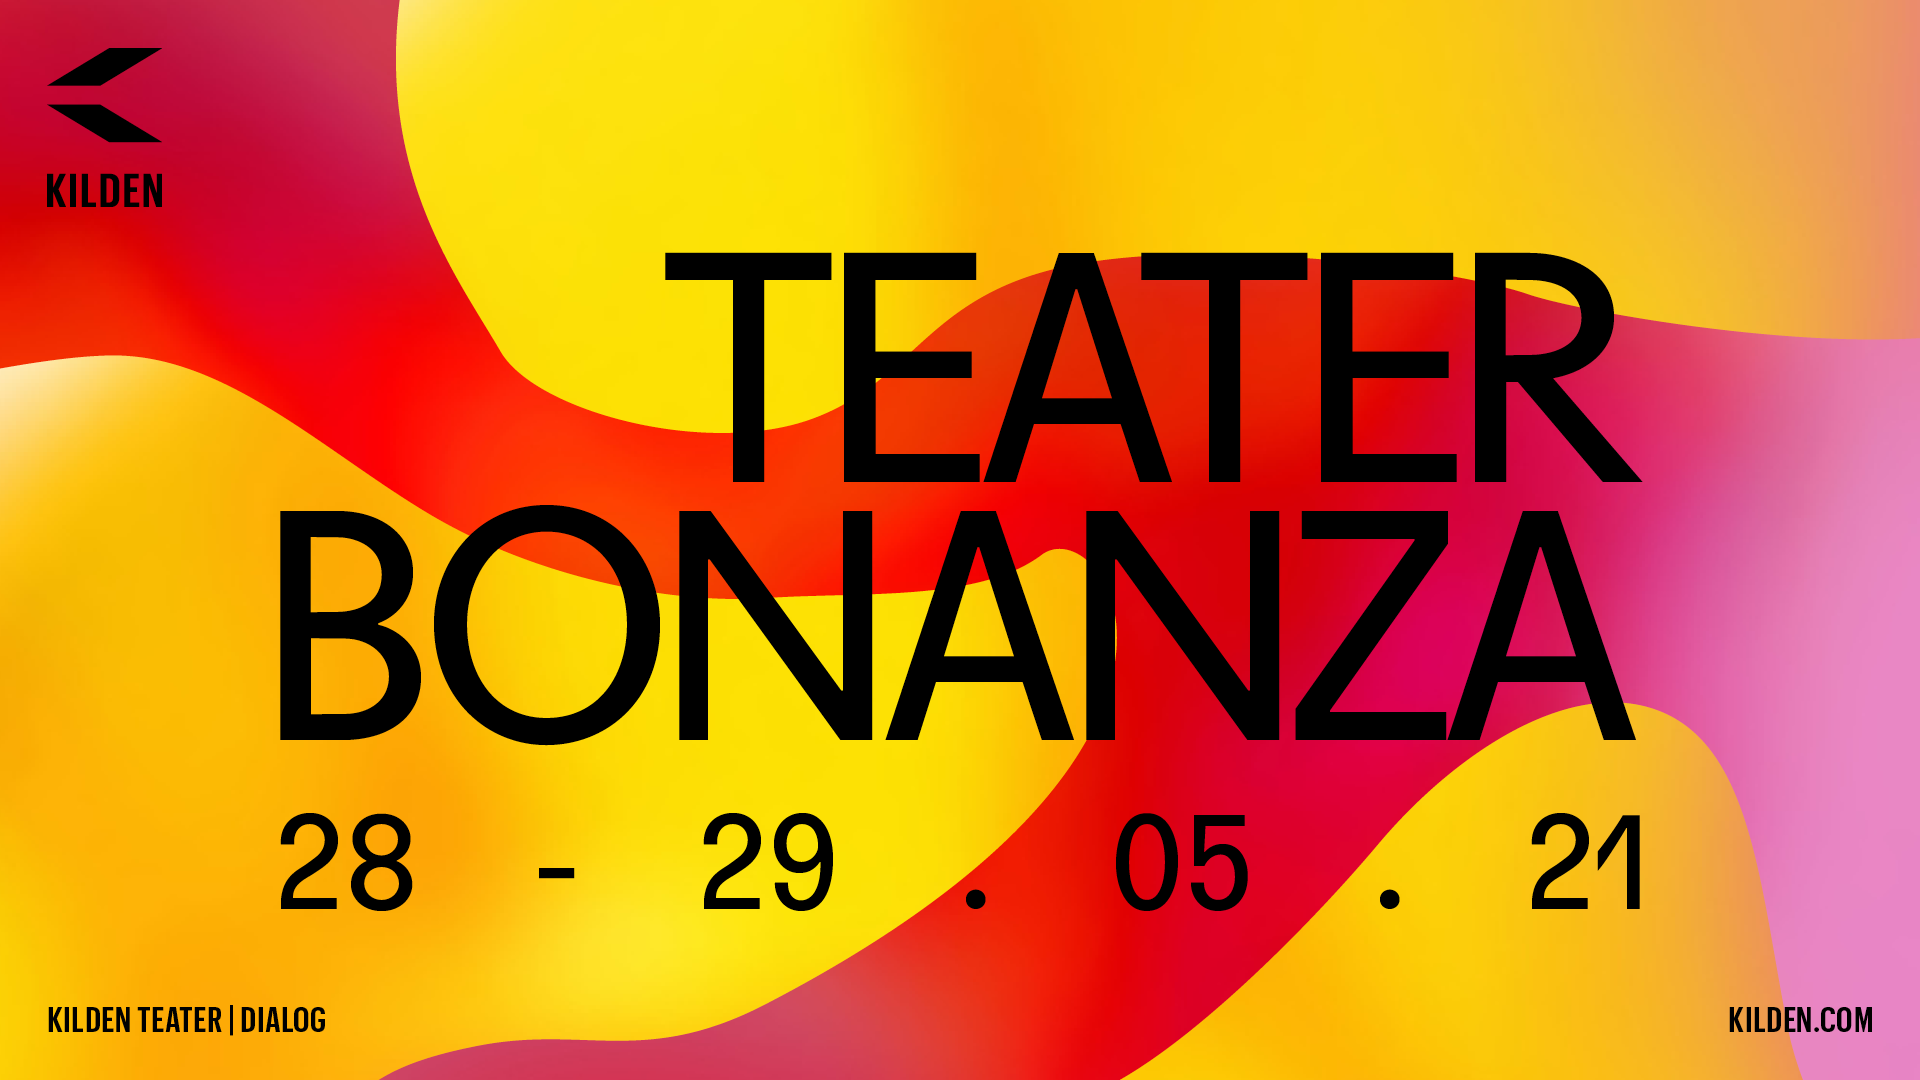 Plakatbilde med tekst: Teater Bonanza på gul og rød bakgrunn